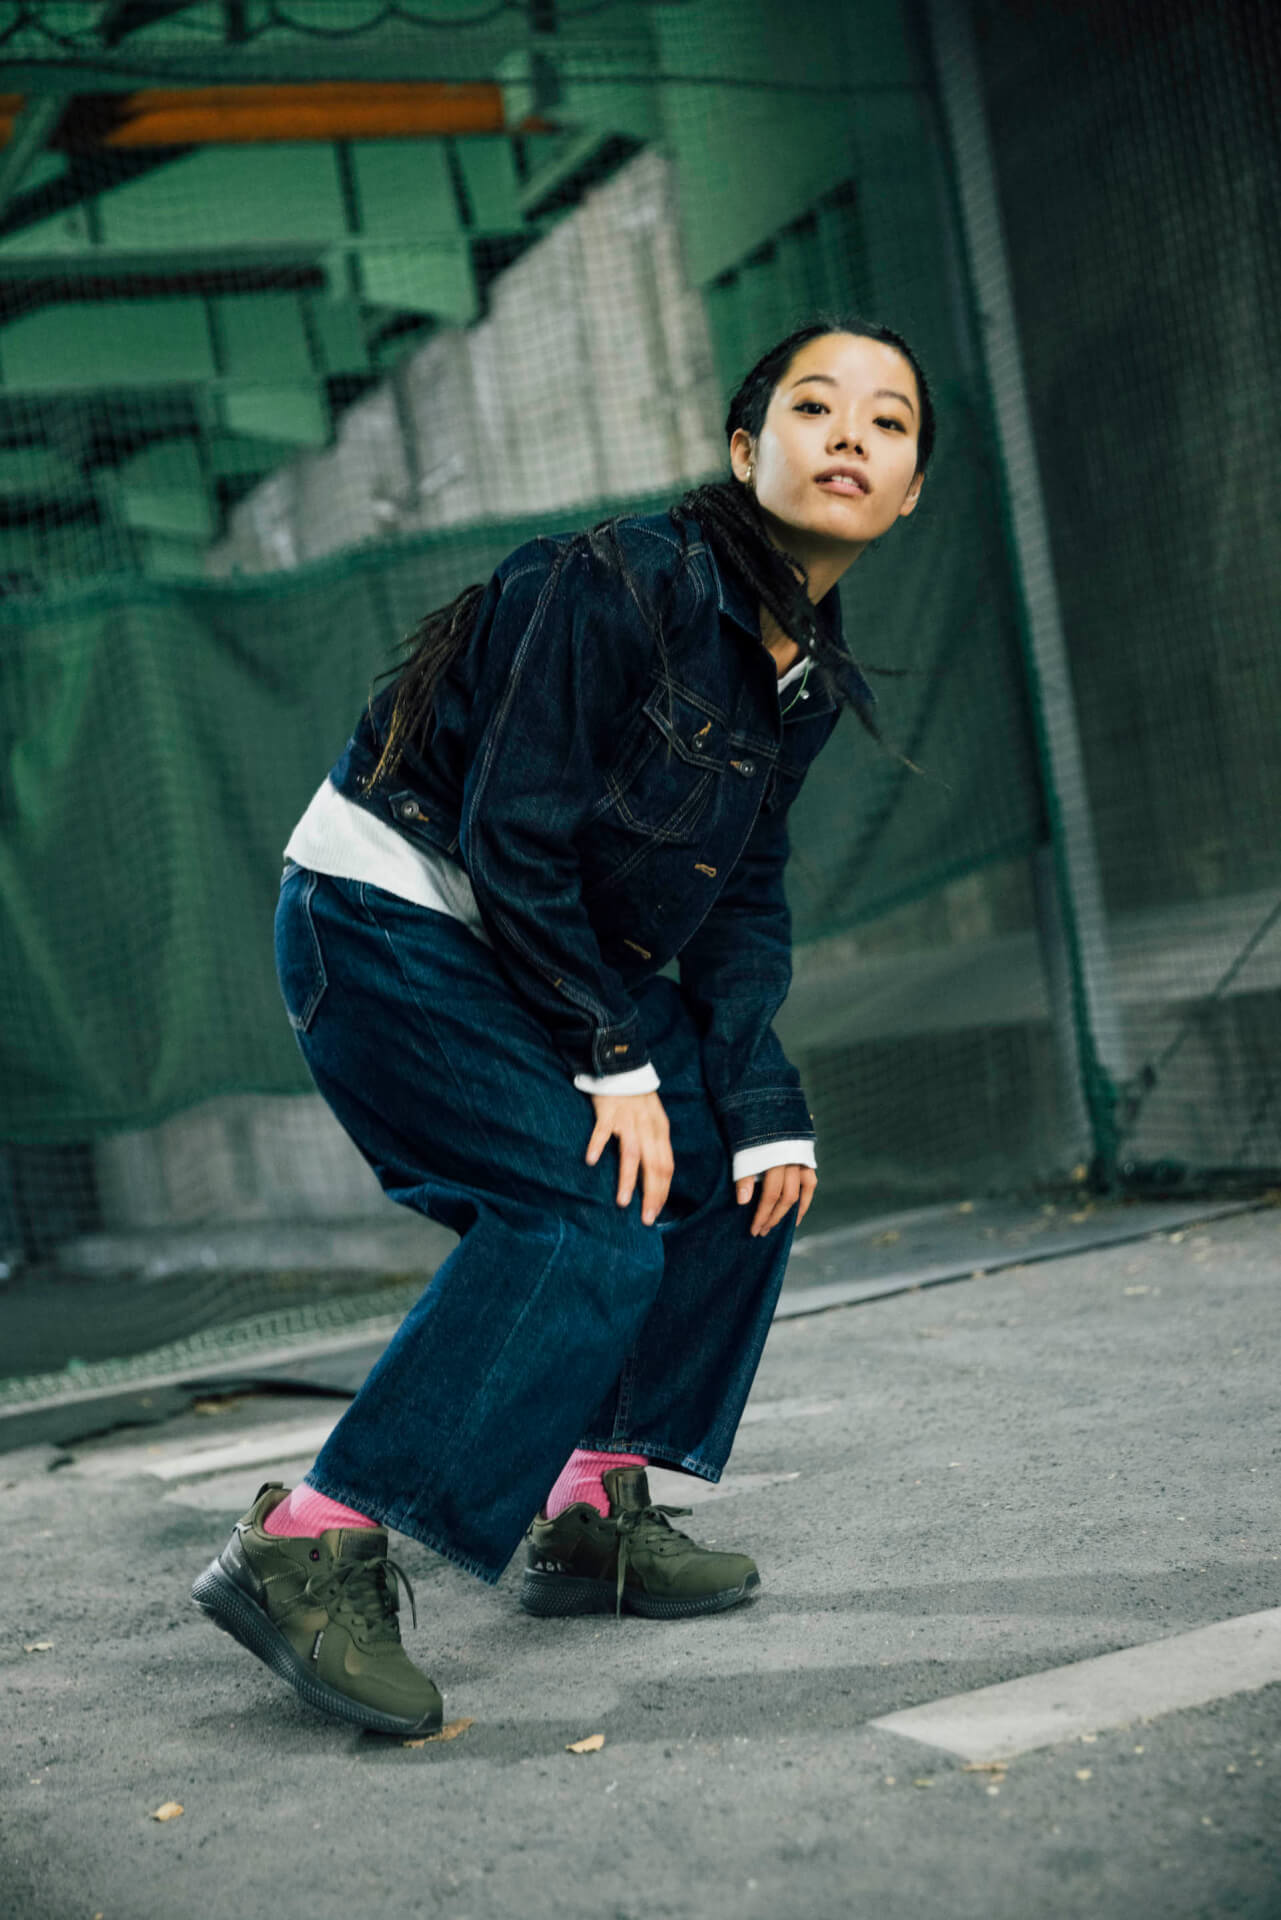 xiangyu × PALLADIUM｜エコなスニーカーから考える“サスティナブル”とファッションの関係性 fashion201221_palladium-027